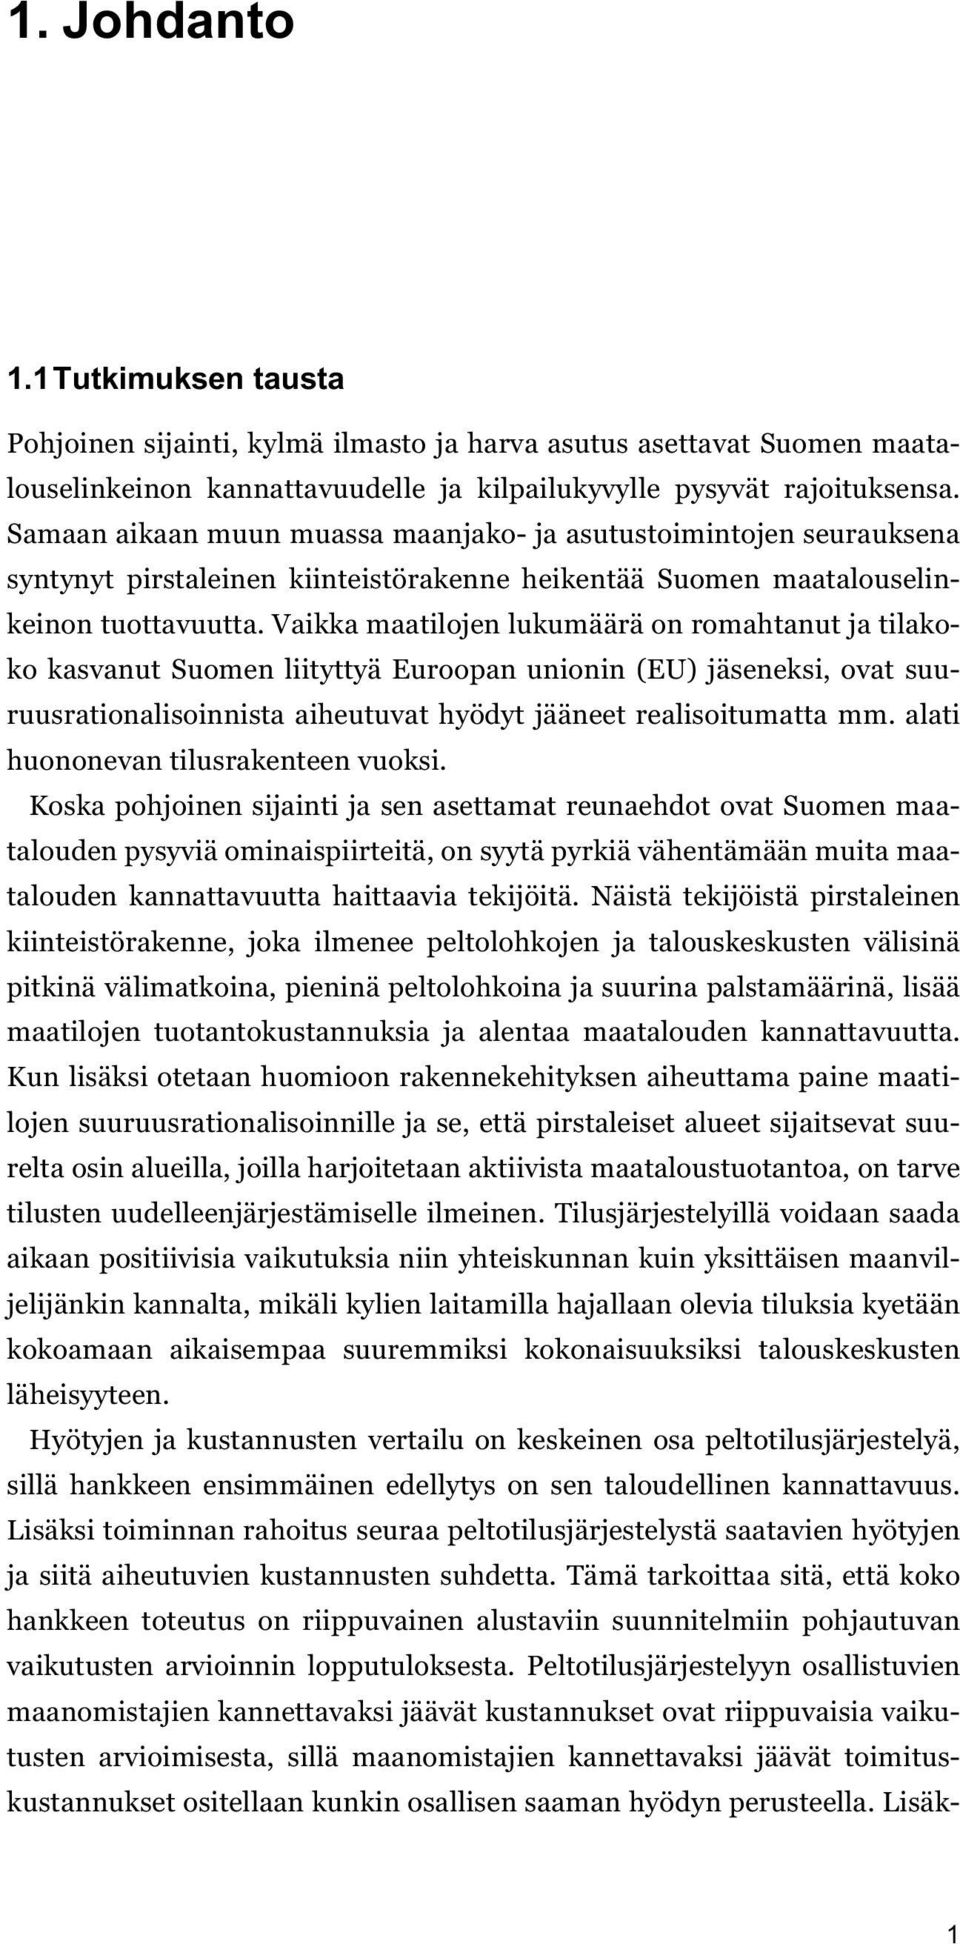 Vaikka maatilojen lukumäärä on romahtanut ja tilakoko kasvanut Suomen liityttyä Euroopan unionin (EU) jäseneksi, ovat suuruusrationalisoinnista aiheutuvat hyödyt jääneet realisoitumatta mm.